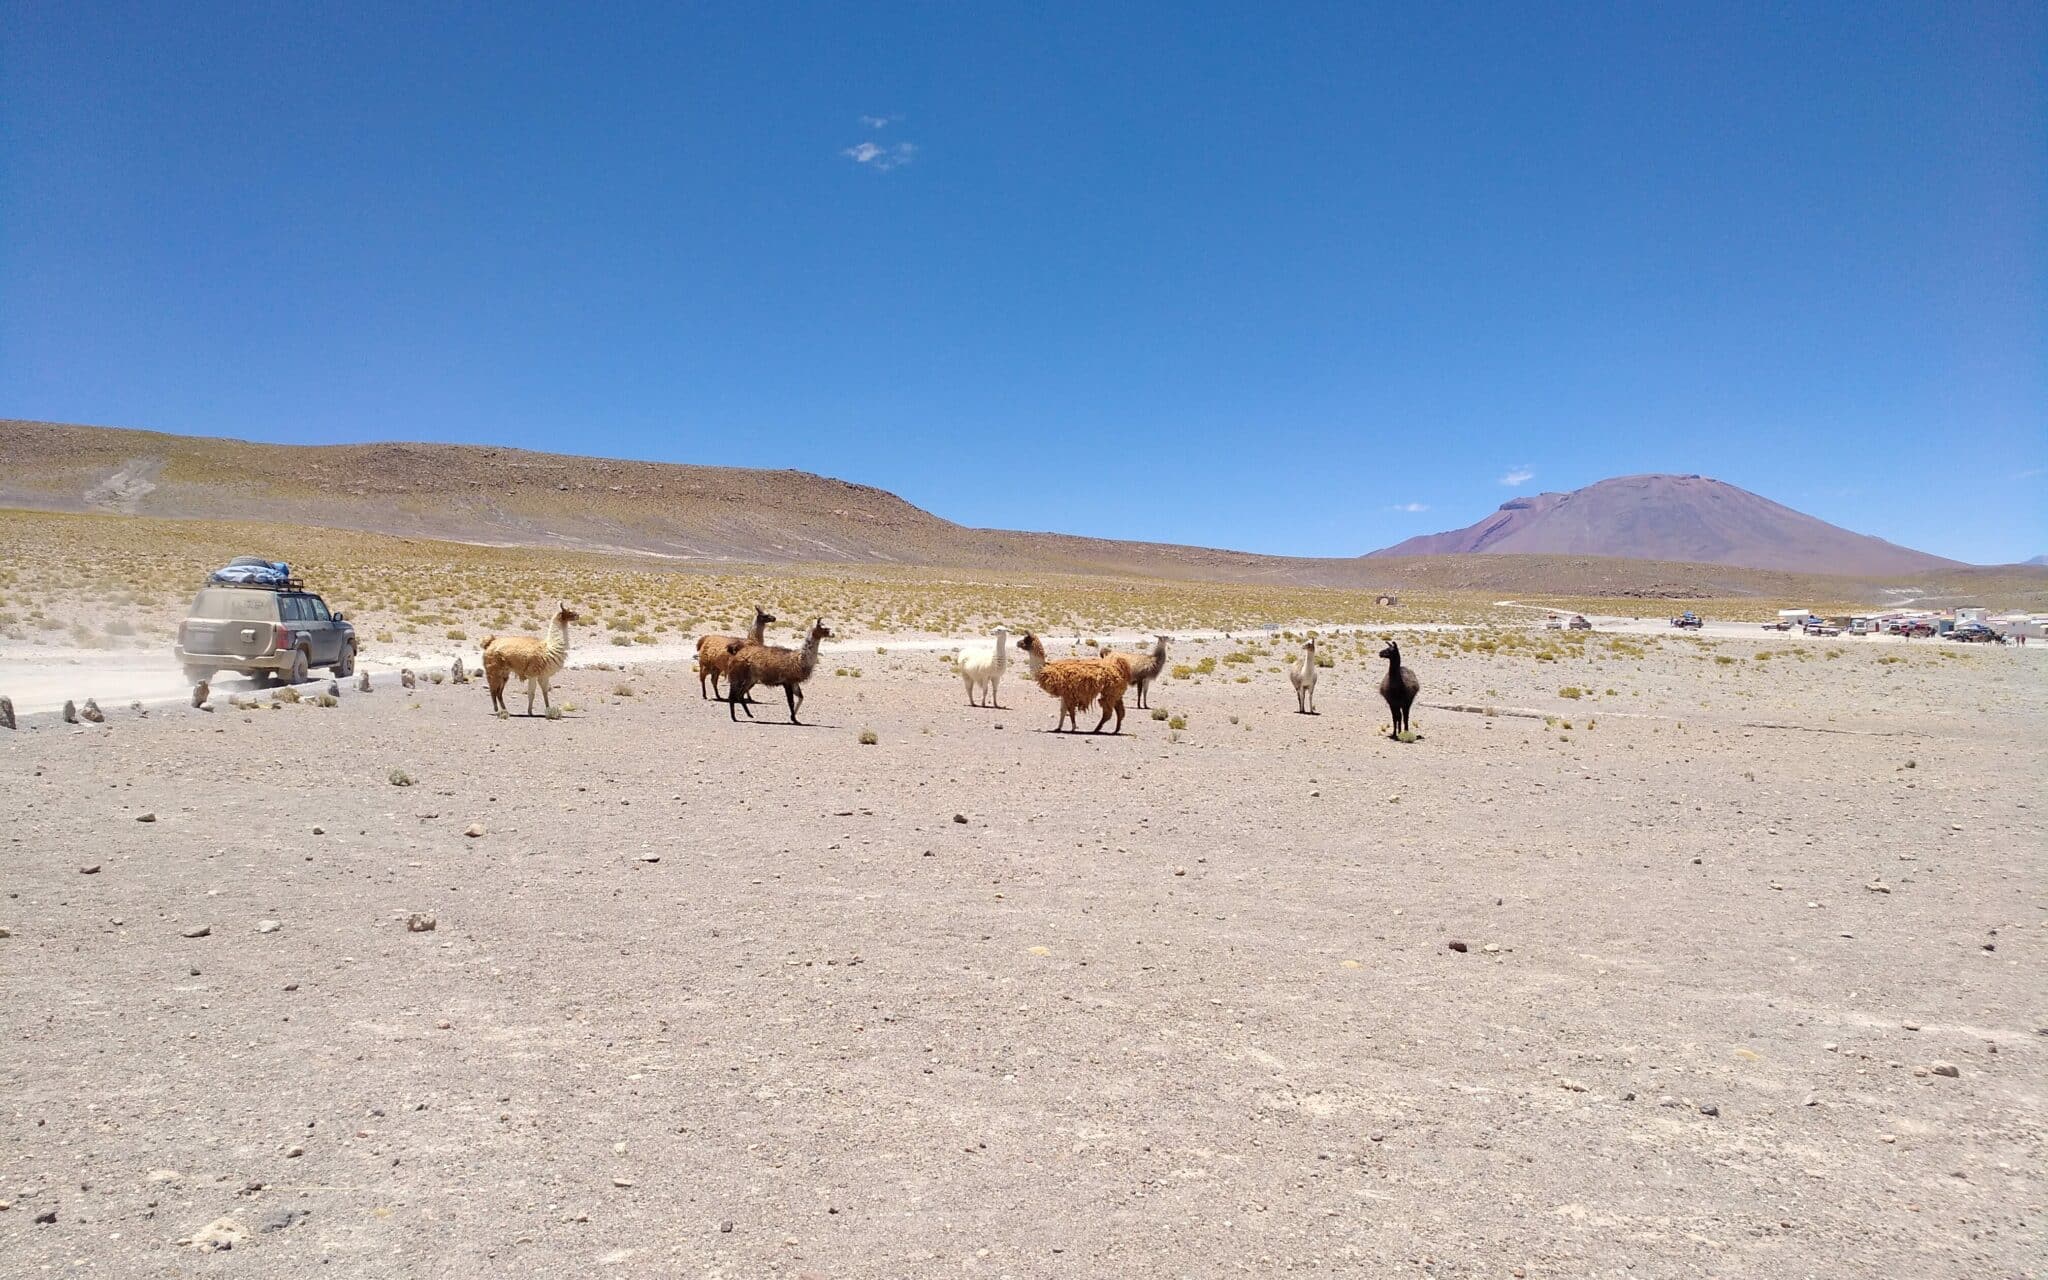 Llamas Y Alpacas En Medio De Un Paisaje Seco, Por Un Camino De Grava Pasa Un Todoterreno.